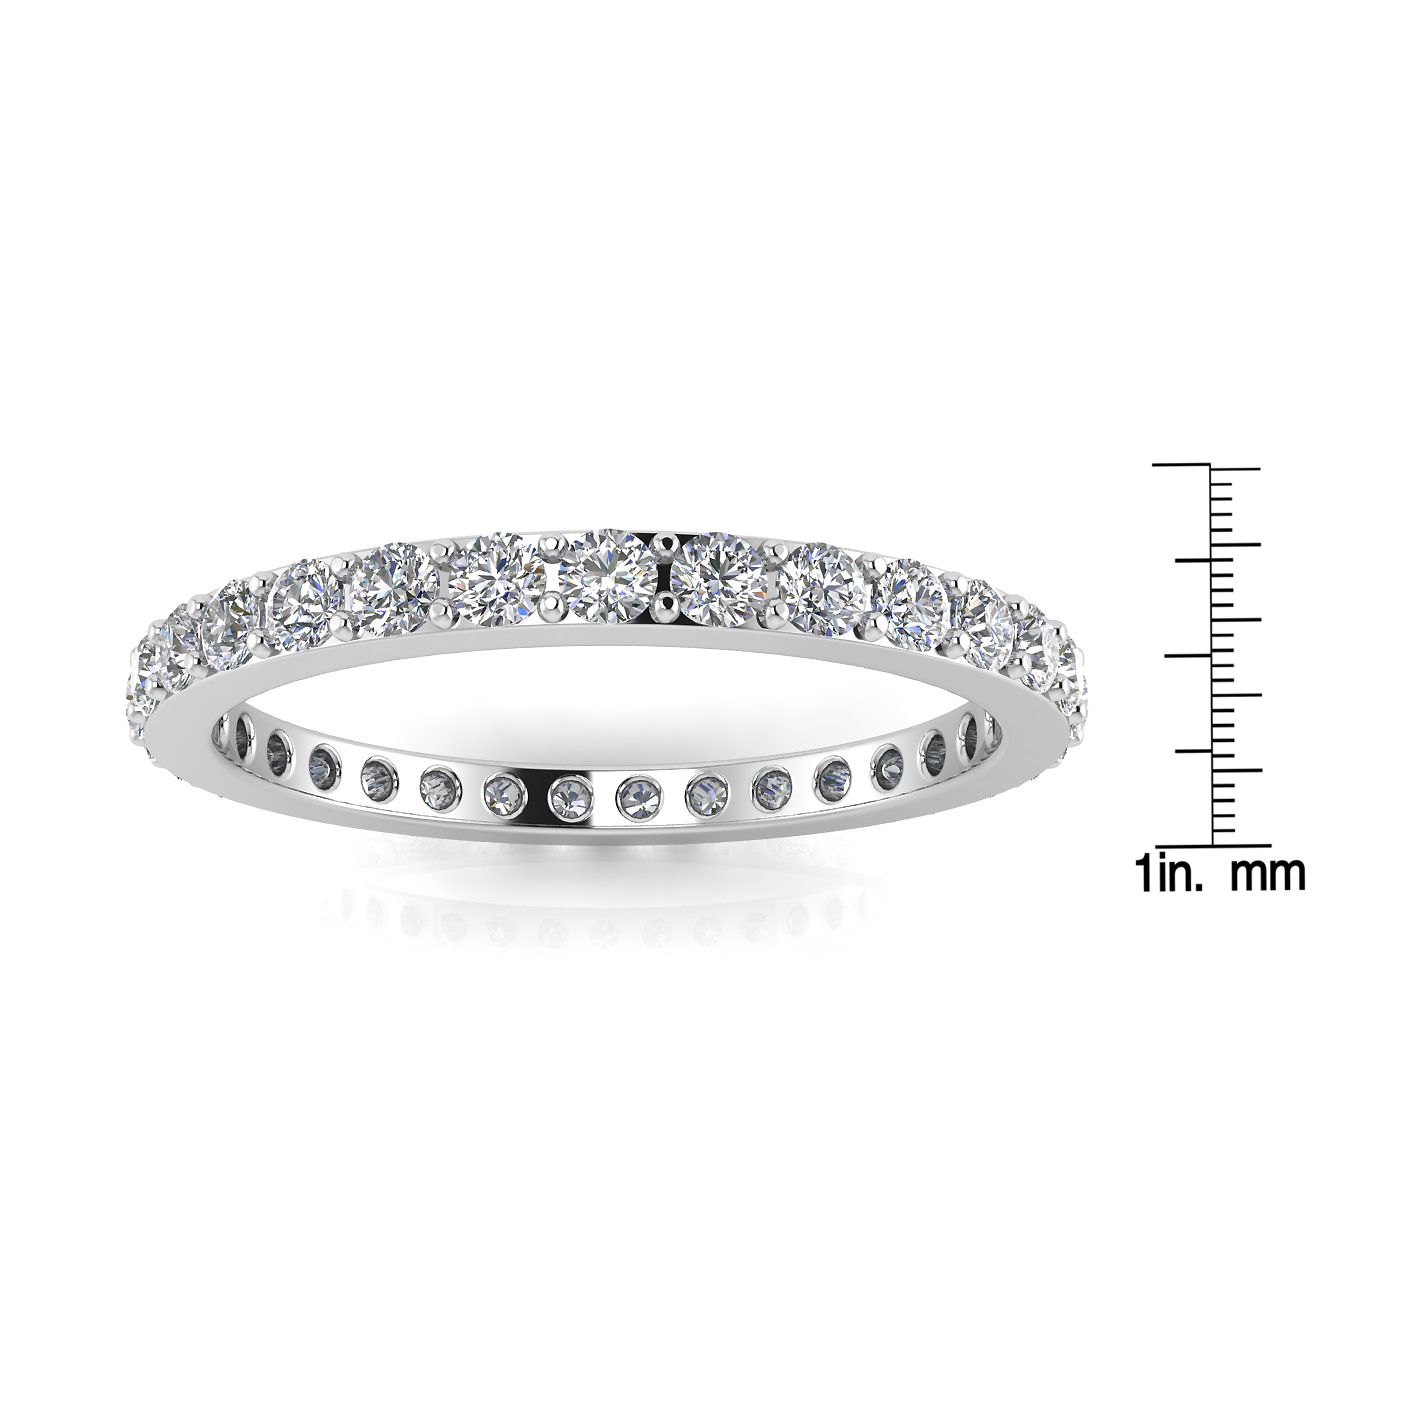 แหวนหมั้นเพชรเจียระไนทรงกลมทรงกลม Eternity Ring ทองคำขาว 14k (1.31 กะรัต) ขนาดแหวน 4